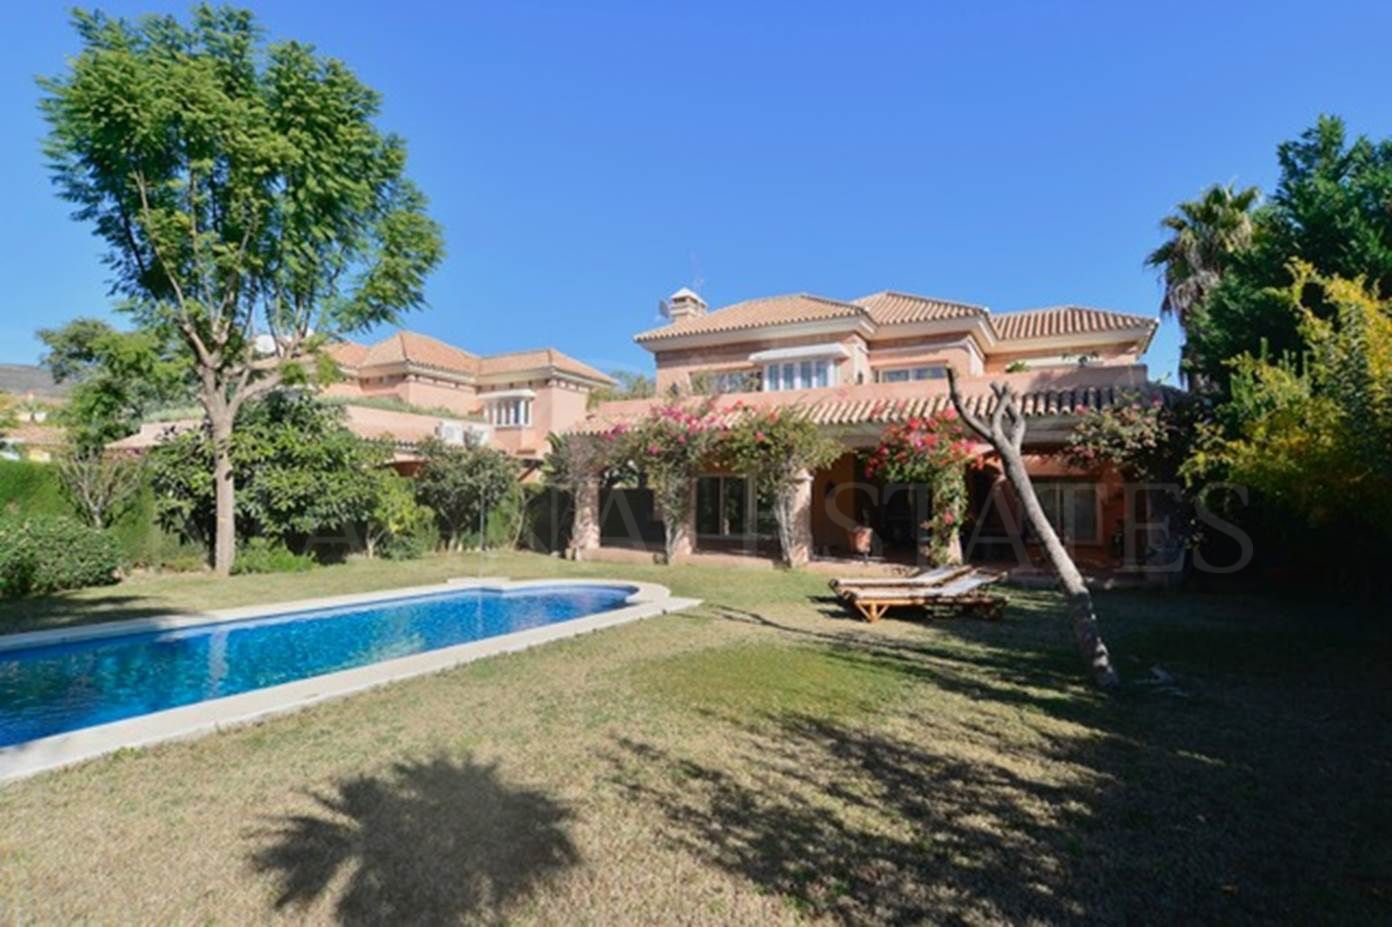 Villa de estilo Andaluz con ascensor privado en pleno Nueva Andalucía, Marbella